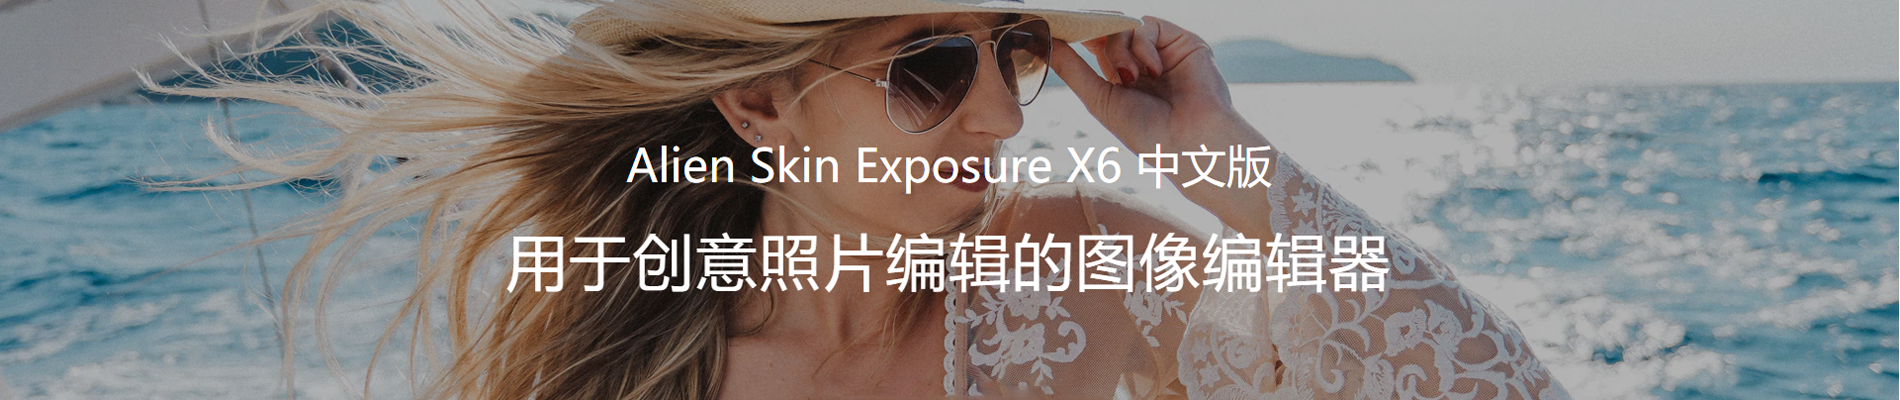 Alien Skin Exposure X6